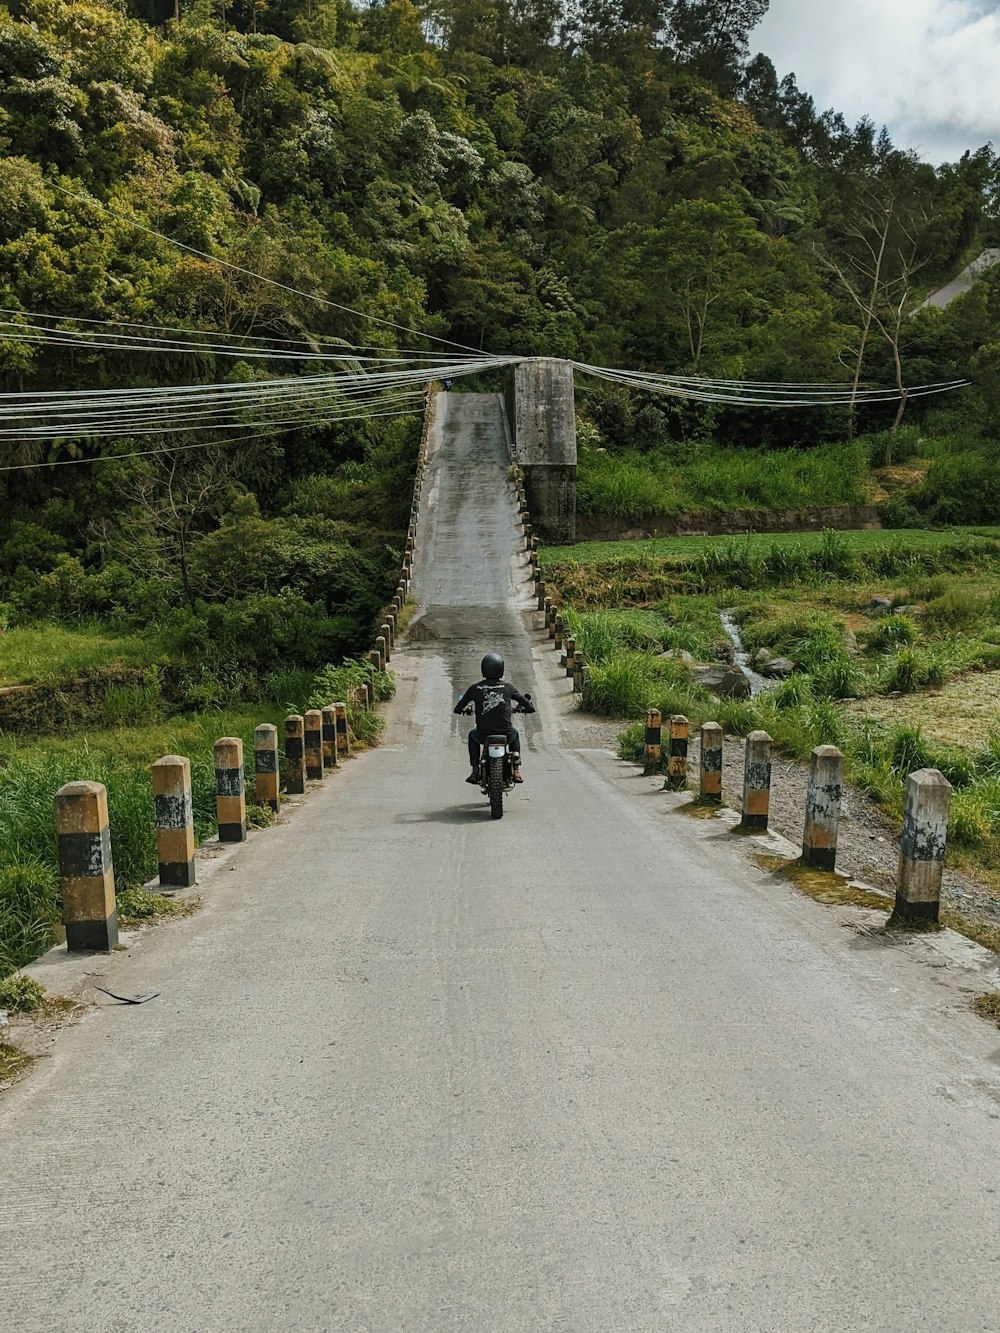 una persona conduciendo una motocicleta por una carretera